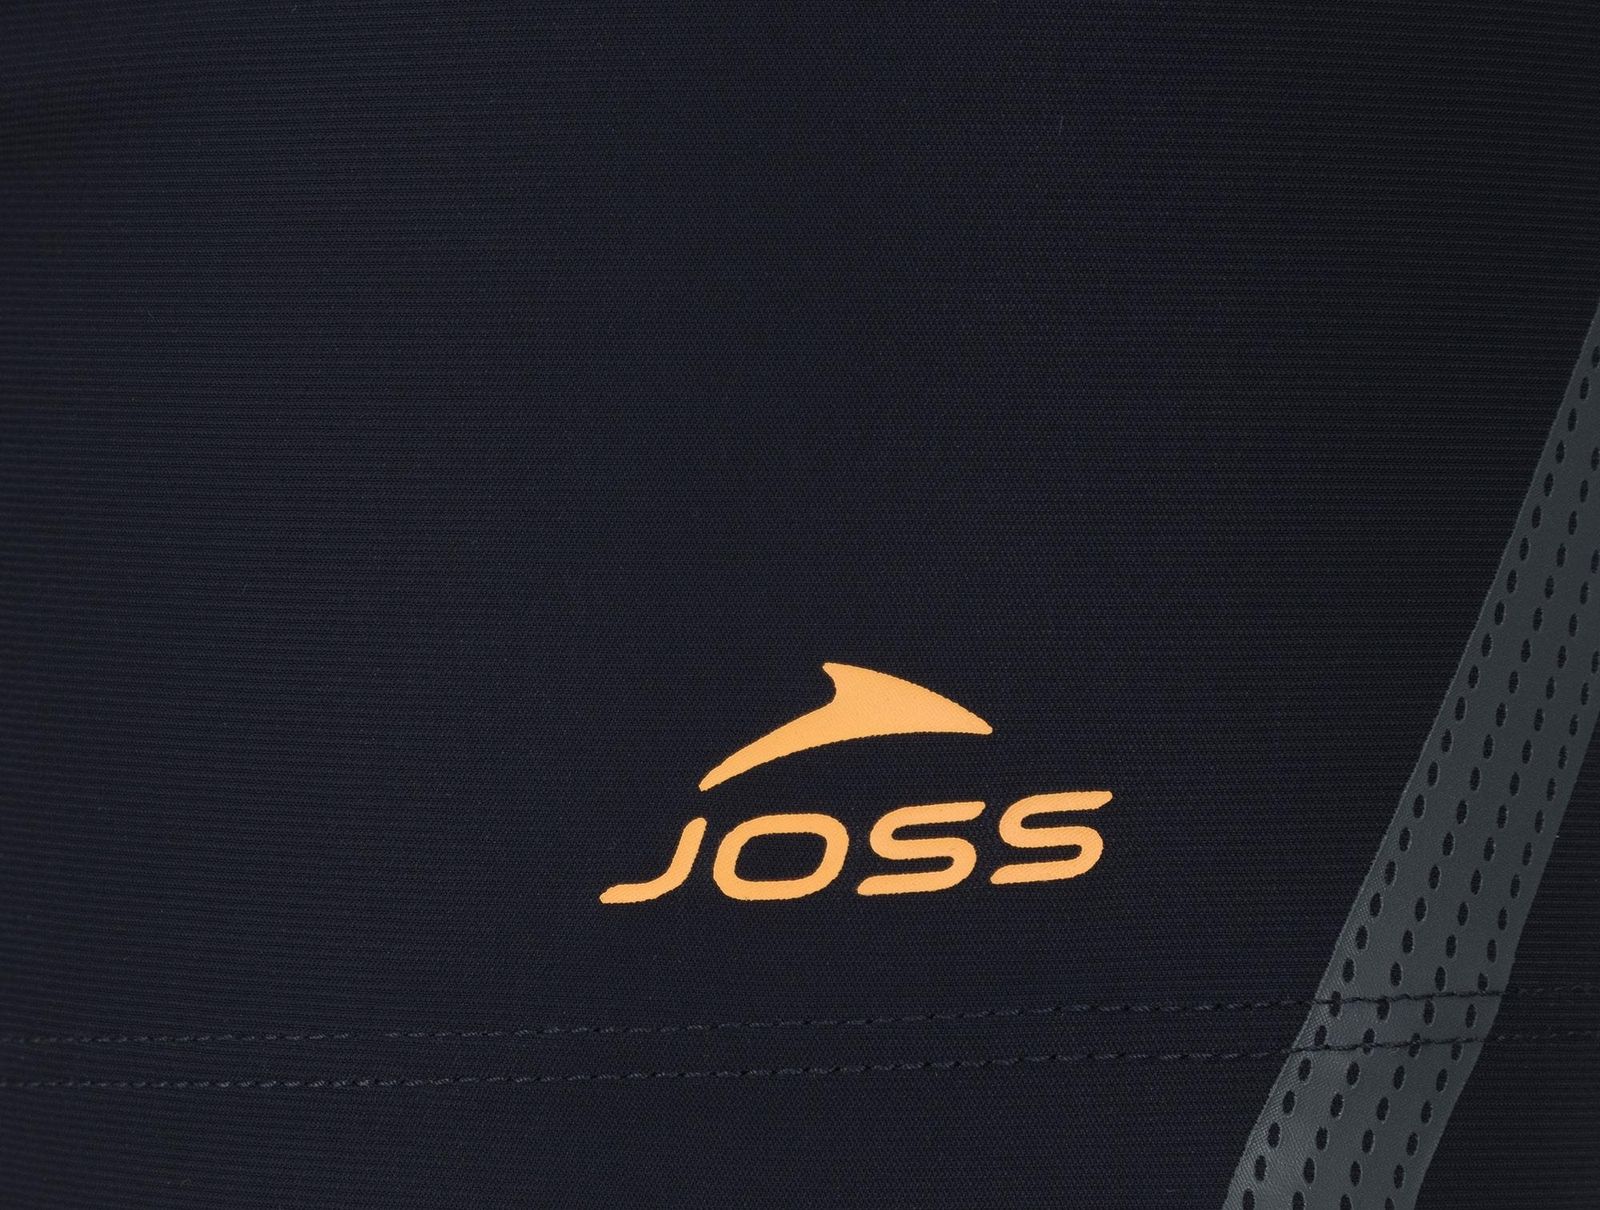   Joss Men's Swim Trunks, : -. S19AJSWTM04-Z4.  46